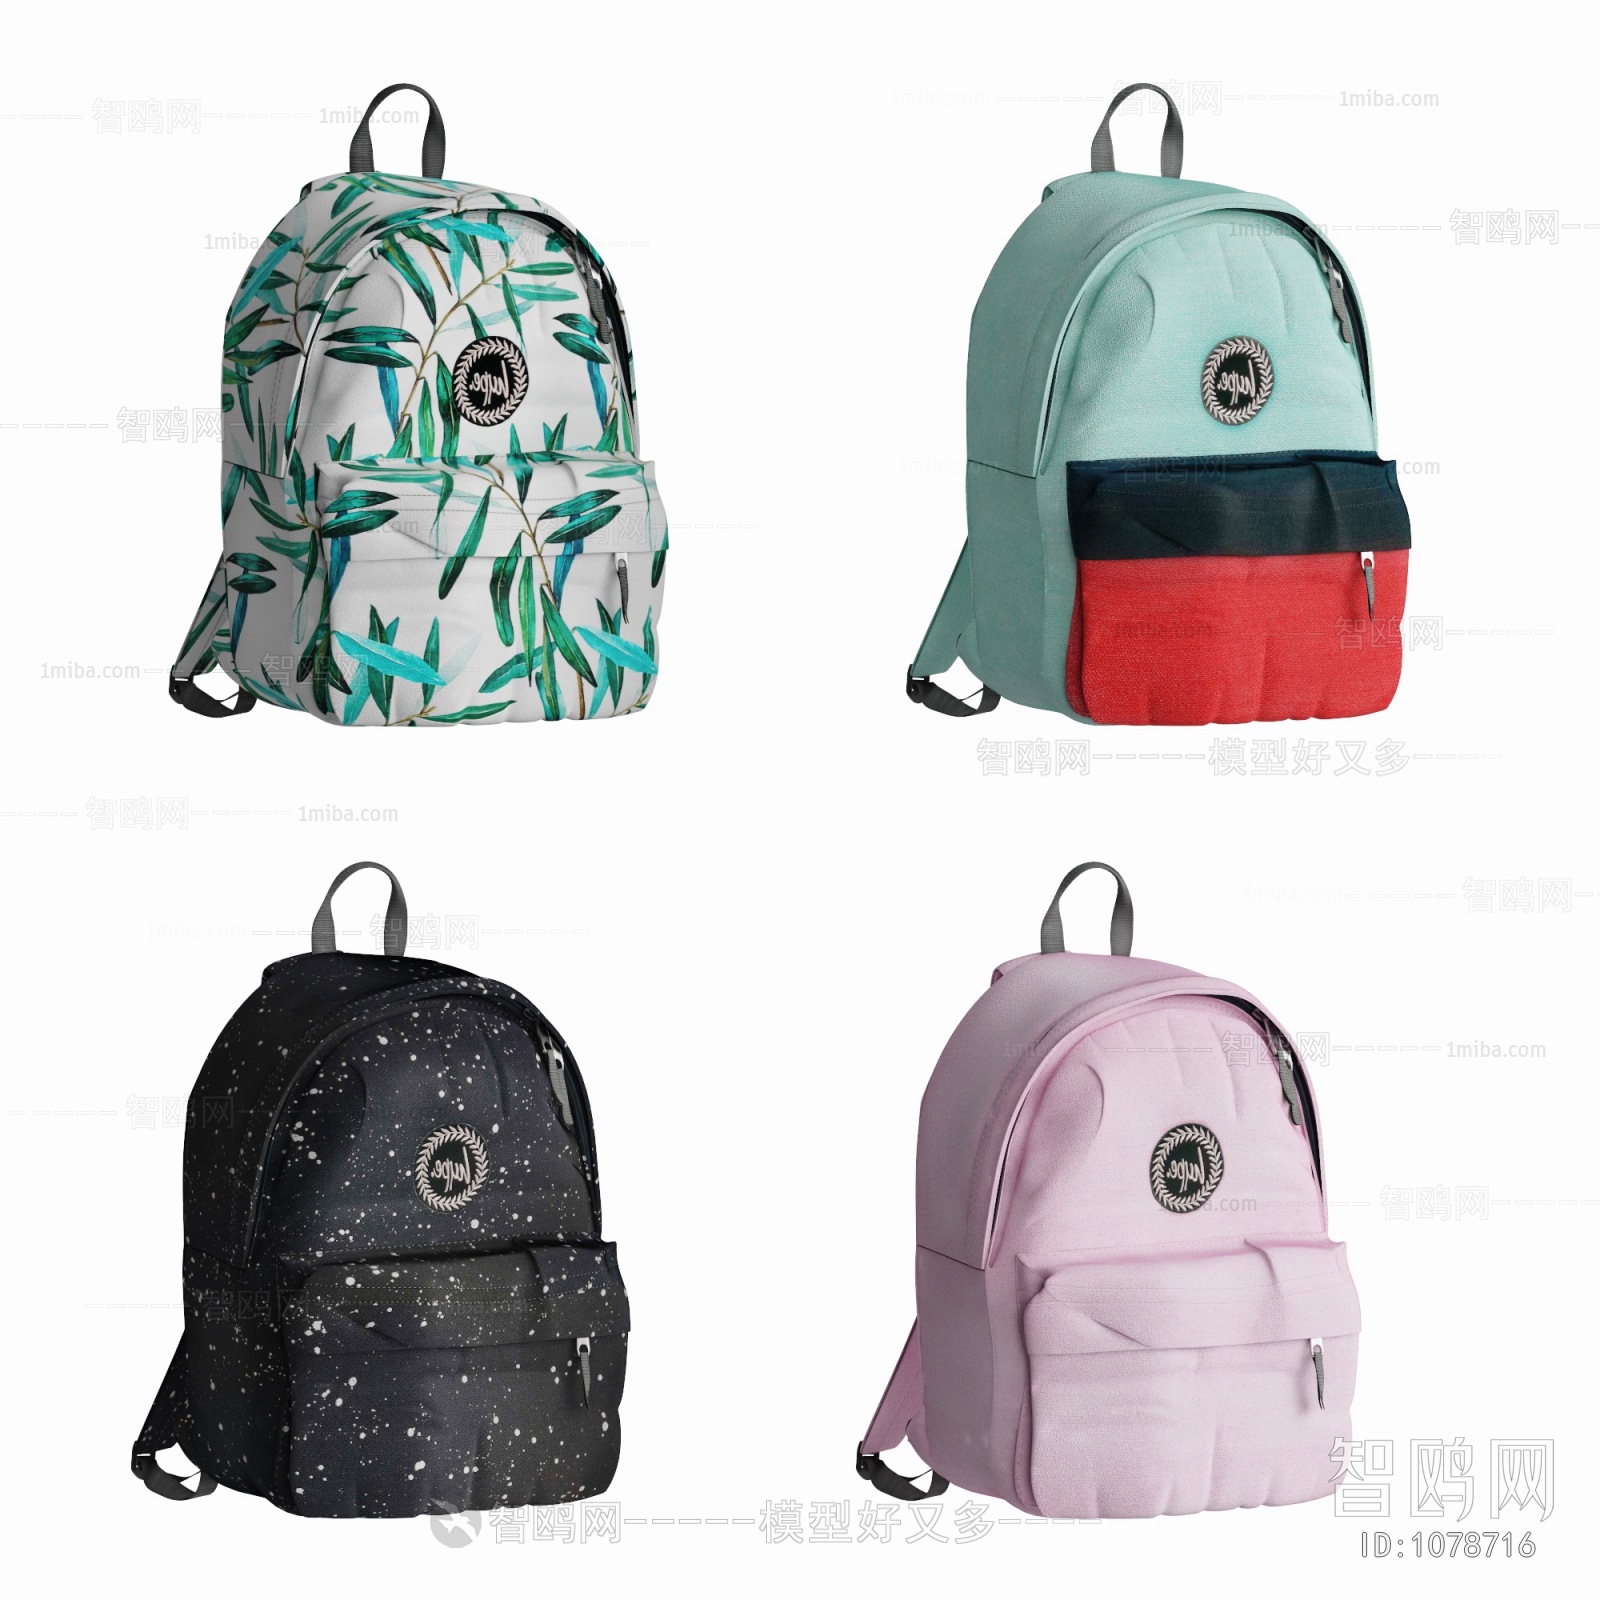 Modern Backpack And Backpack